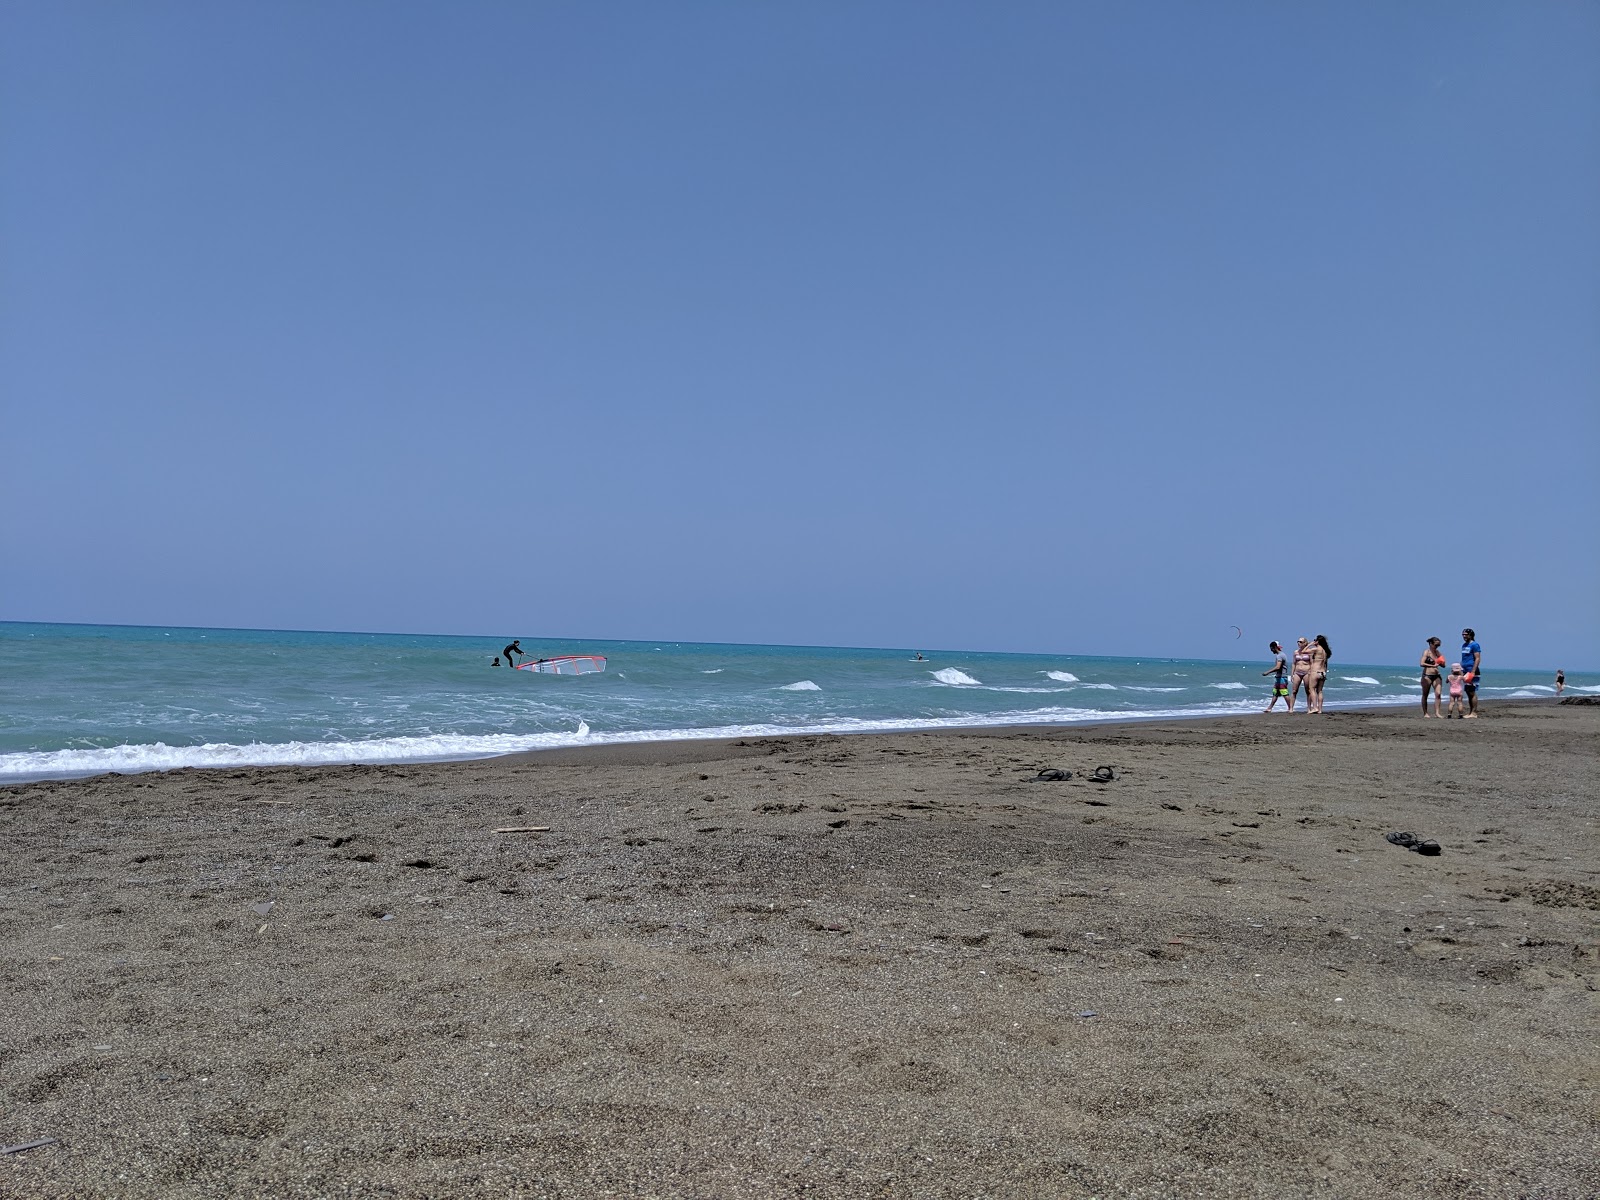 Etruria beach'in fotoğrafı doğal alan içinde bulunmaktadır